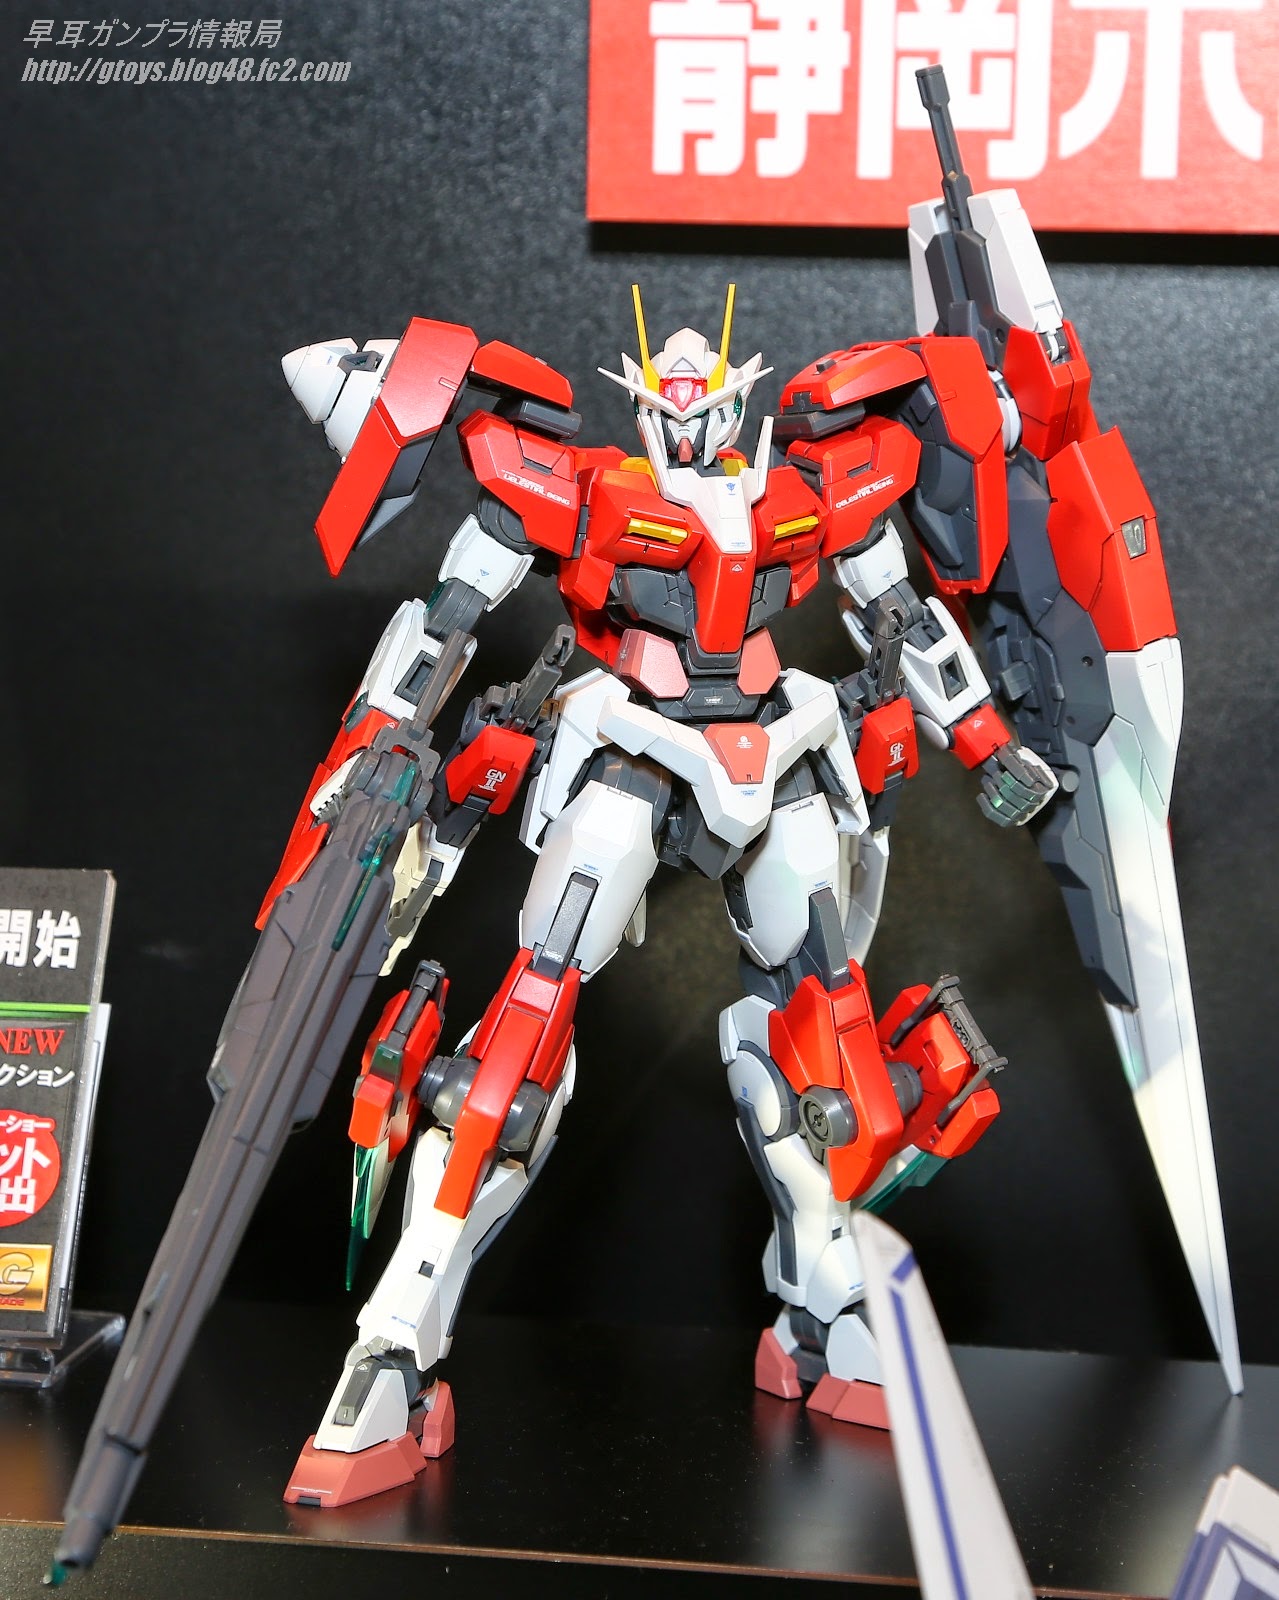 P Bandai Mg 1 100 Gundam Seven Sword G Inspection Colors On Display At 53rd Shizuoka Hobby Show 2014 Gundam Kits Collection News And Reviews